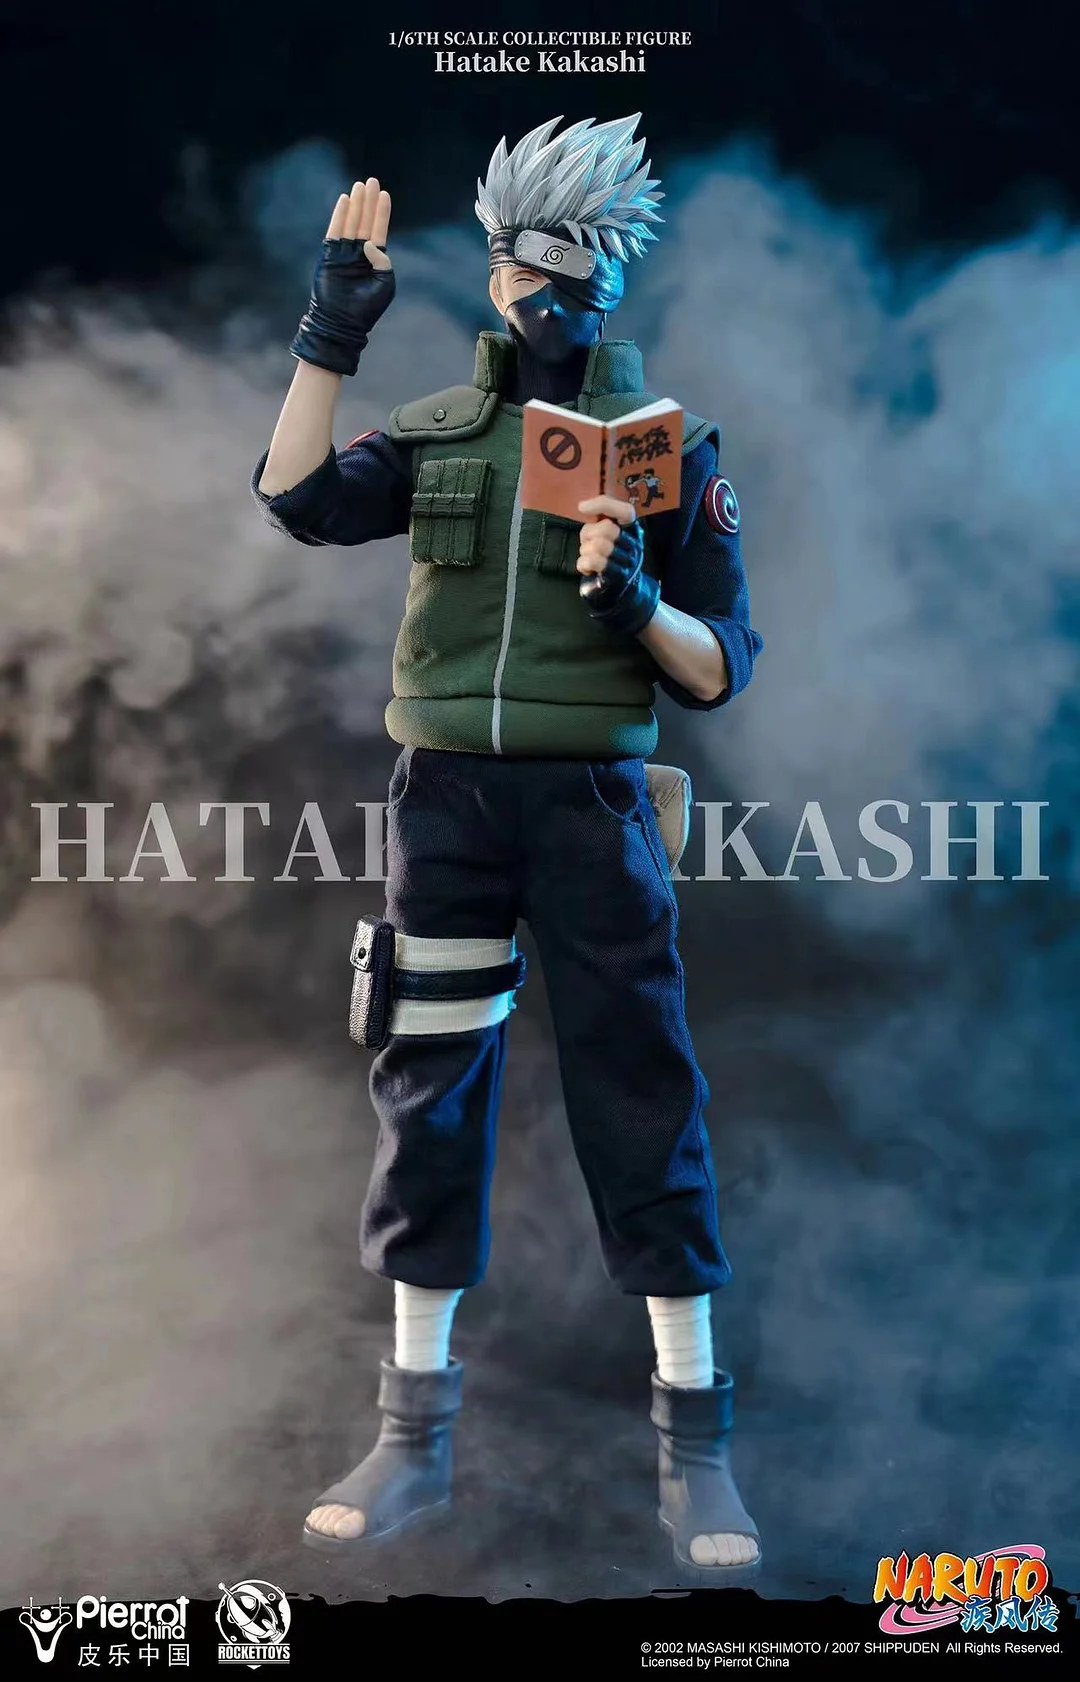 Kakashi Hatake Action Figure / Kakashi with Sharingan eyes and